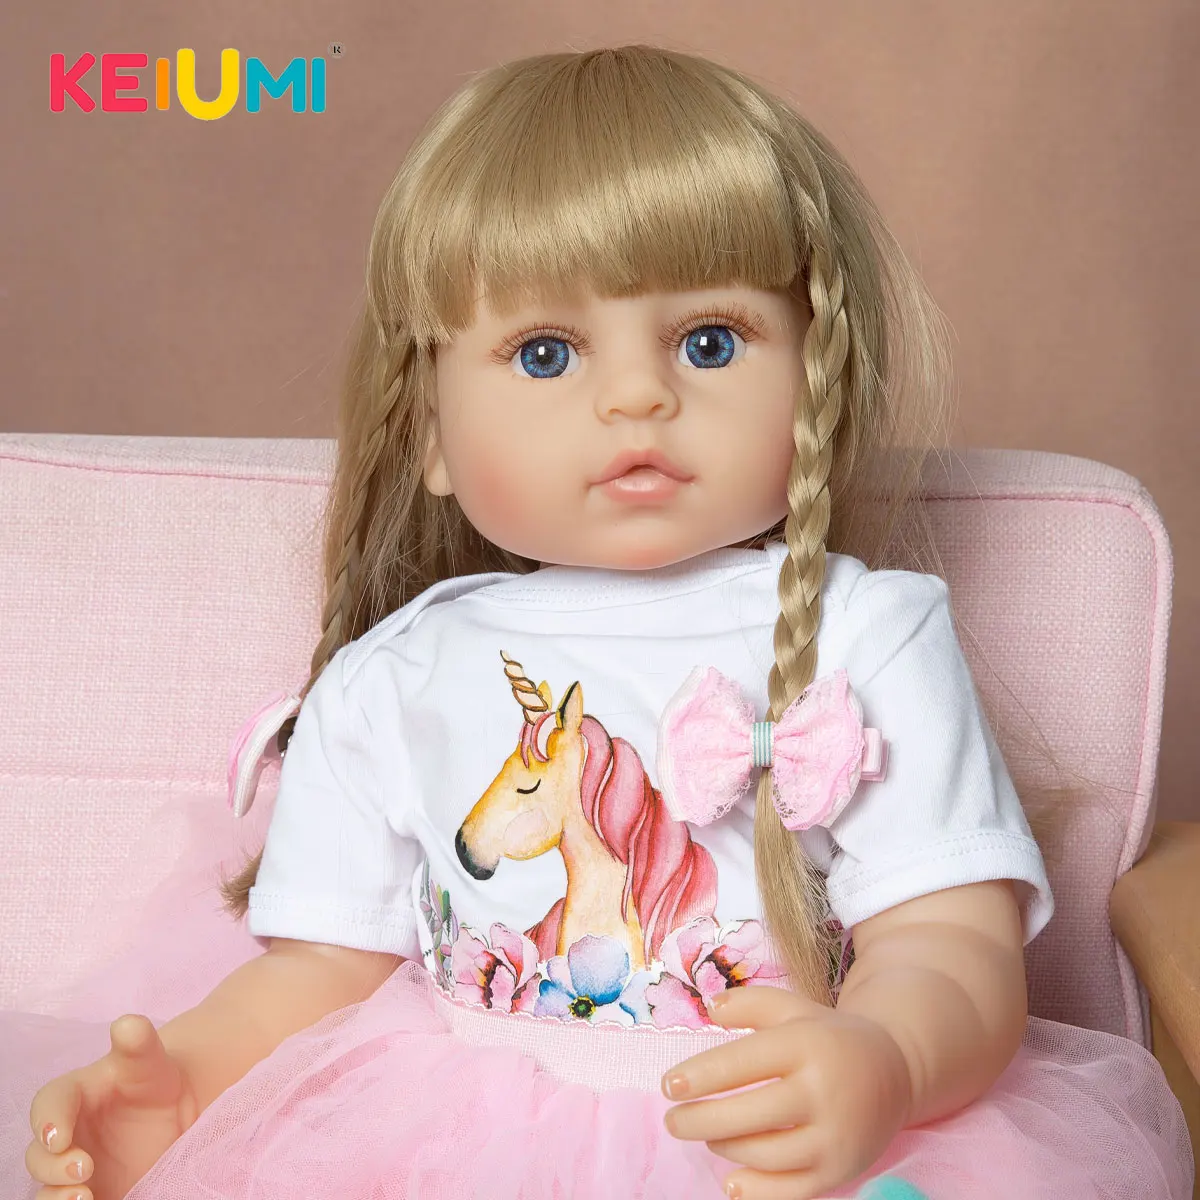 KEIUMI 22-дюймовая полностью силиконовая кукла Новорожденный ребенок новорожденный